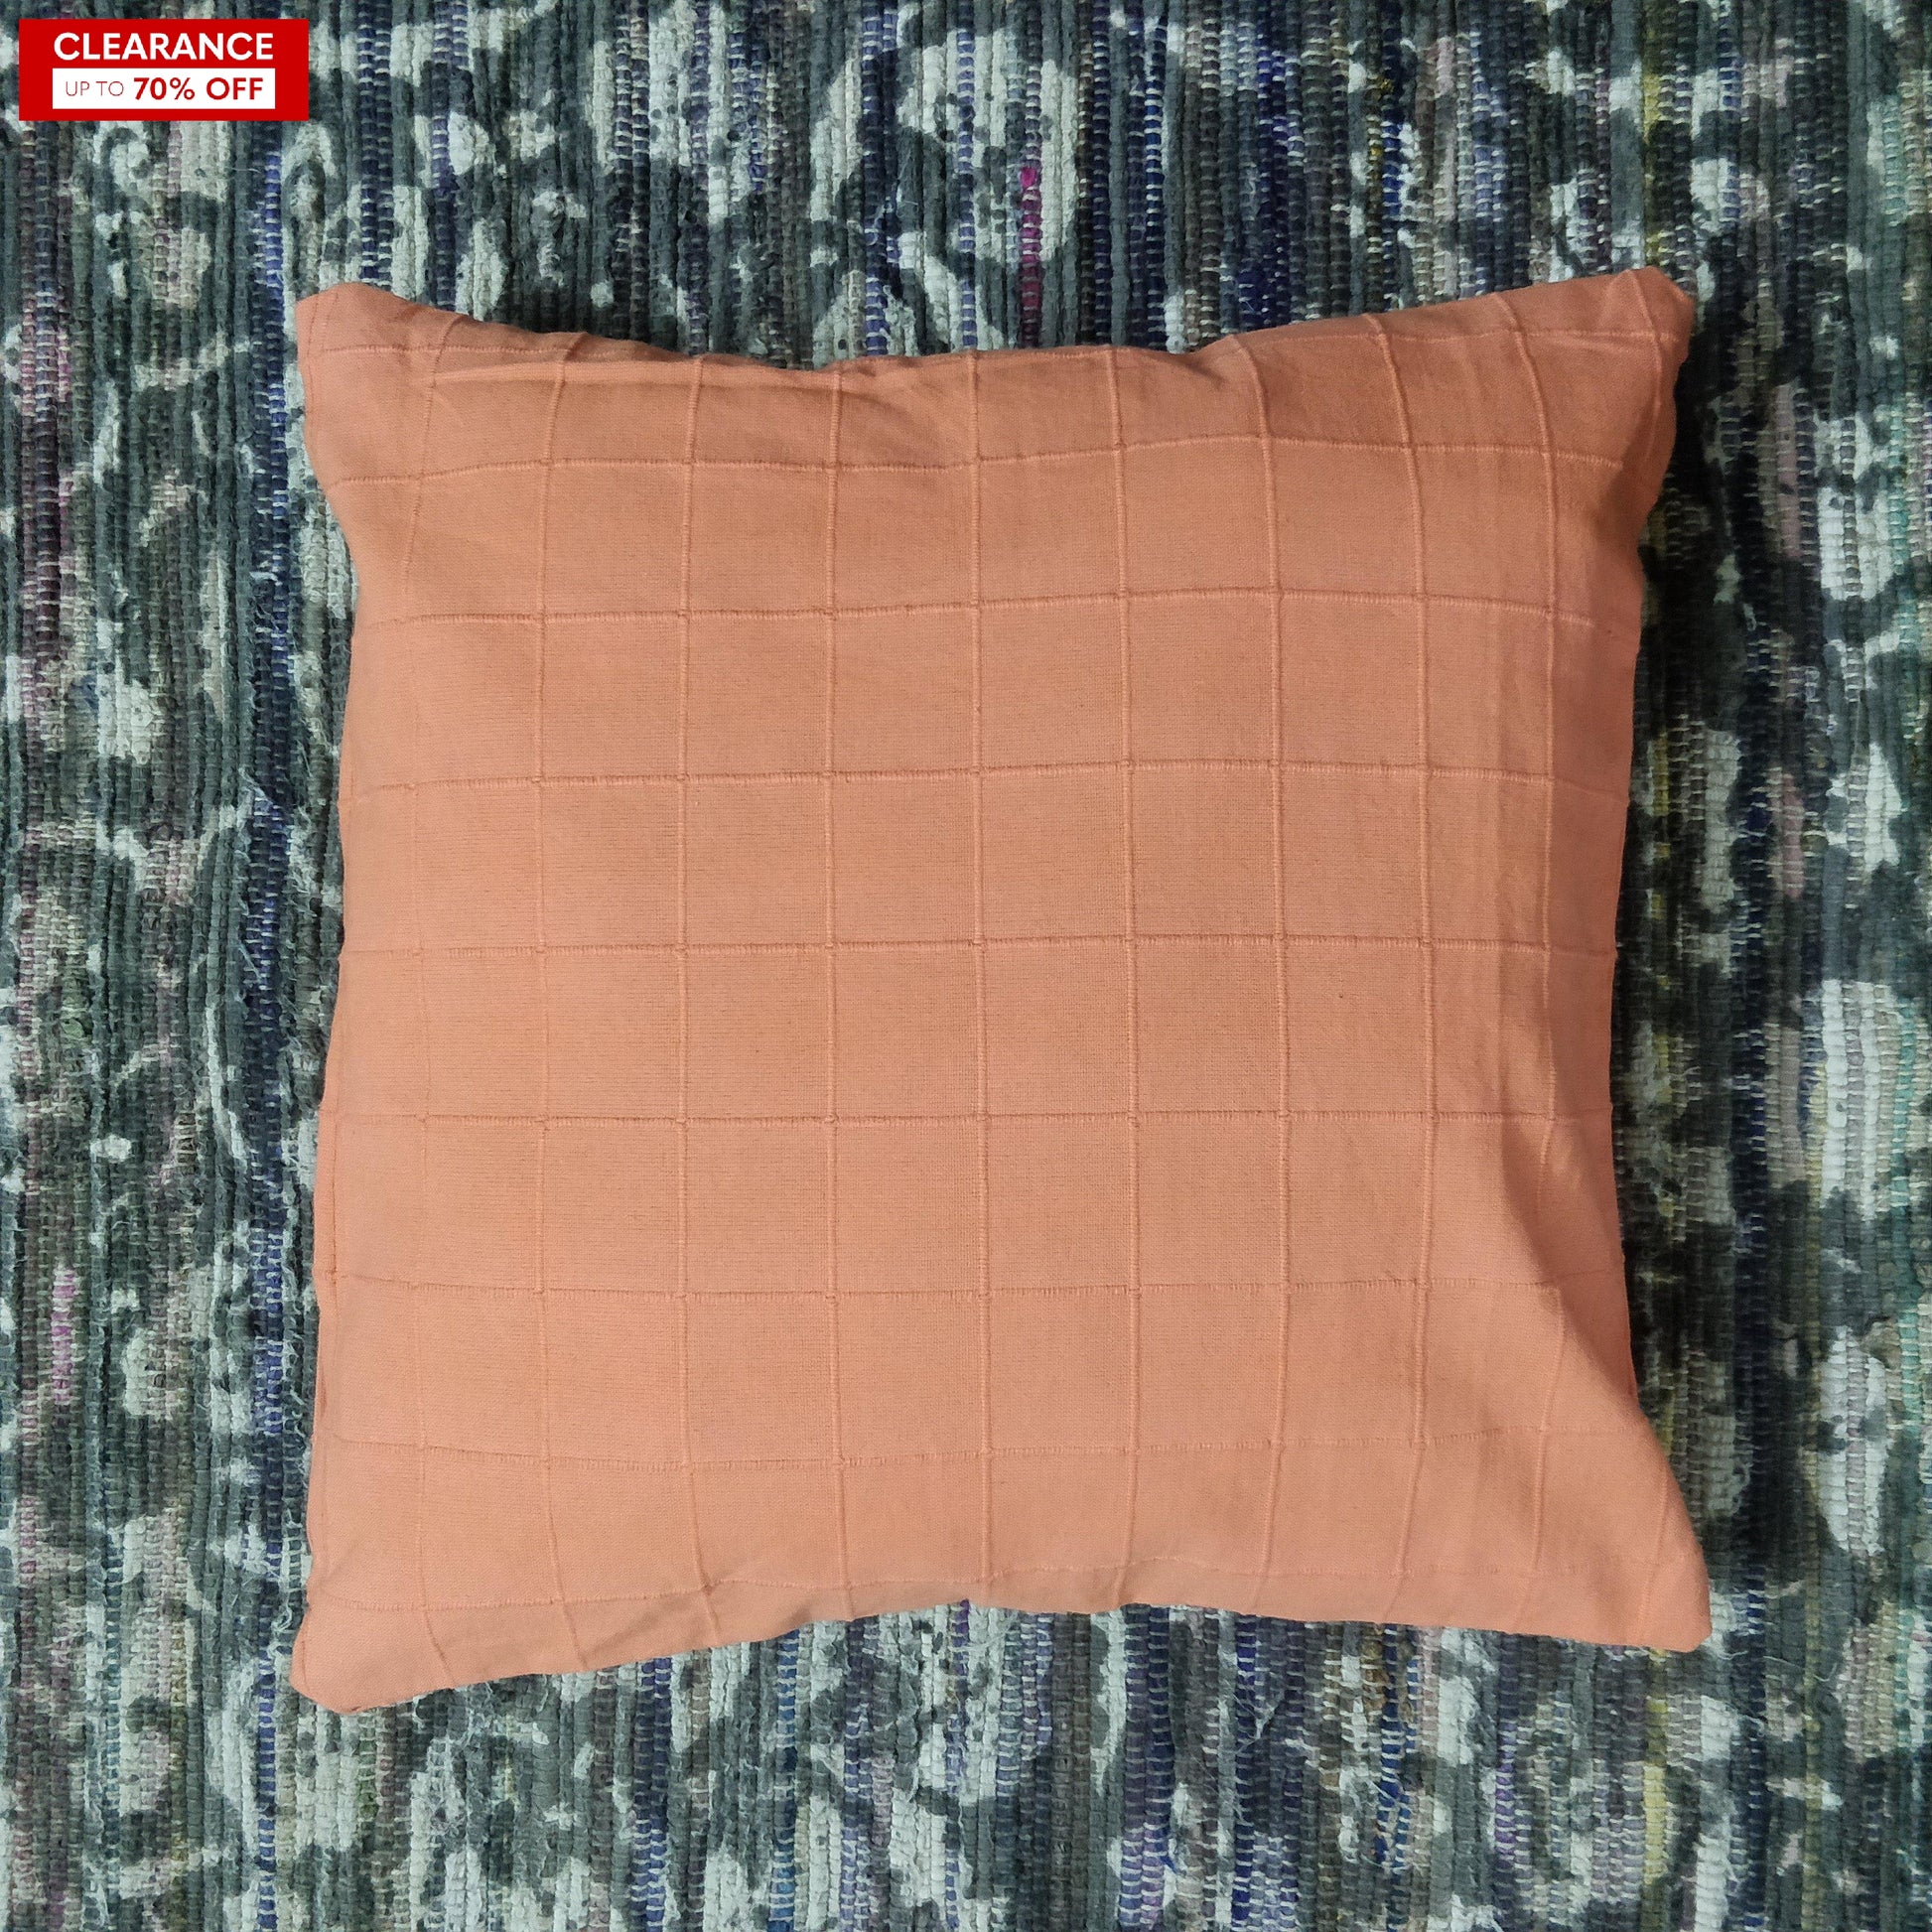 16" Peach Checkered Thick Cushion Cover - The Teal Thread